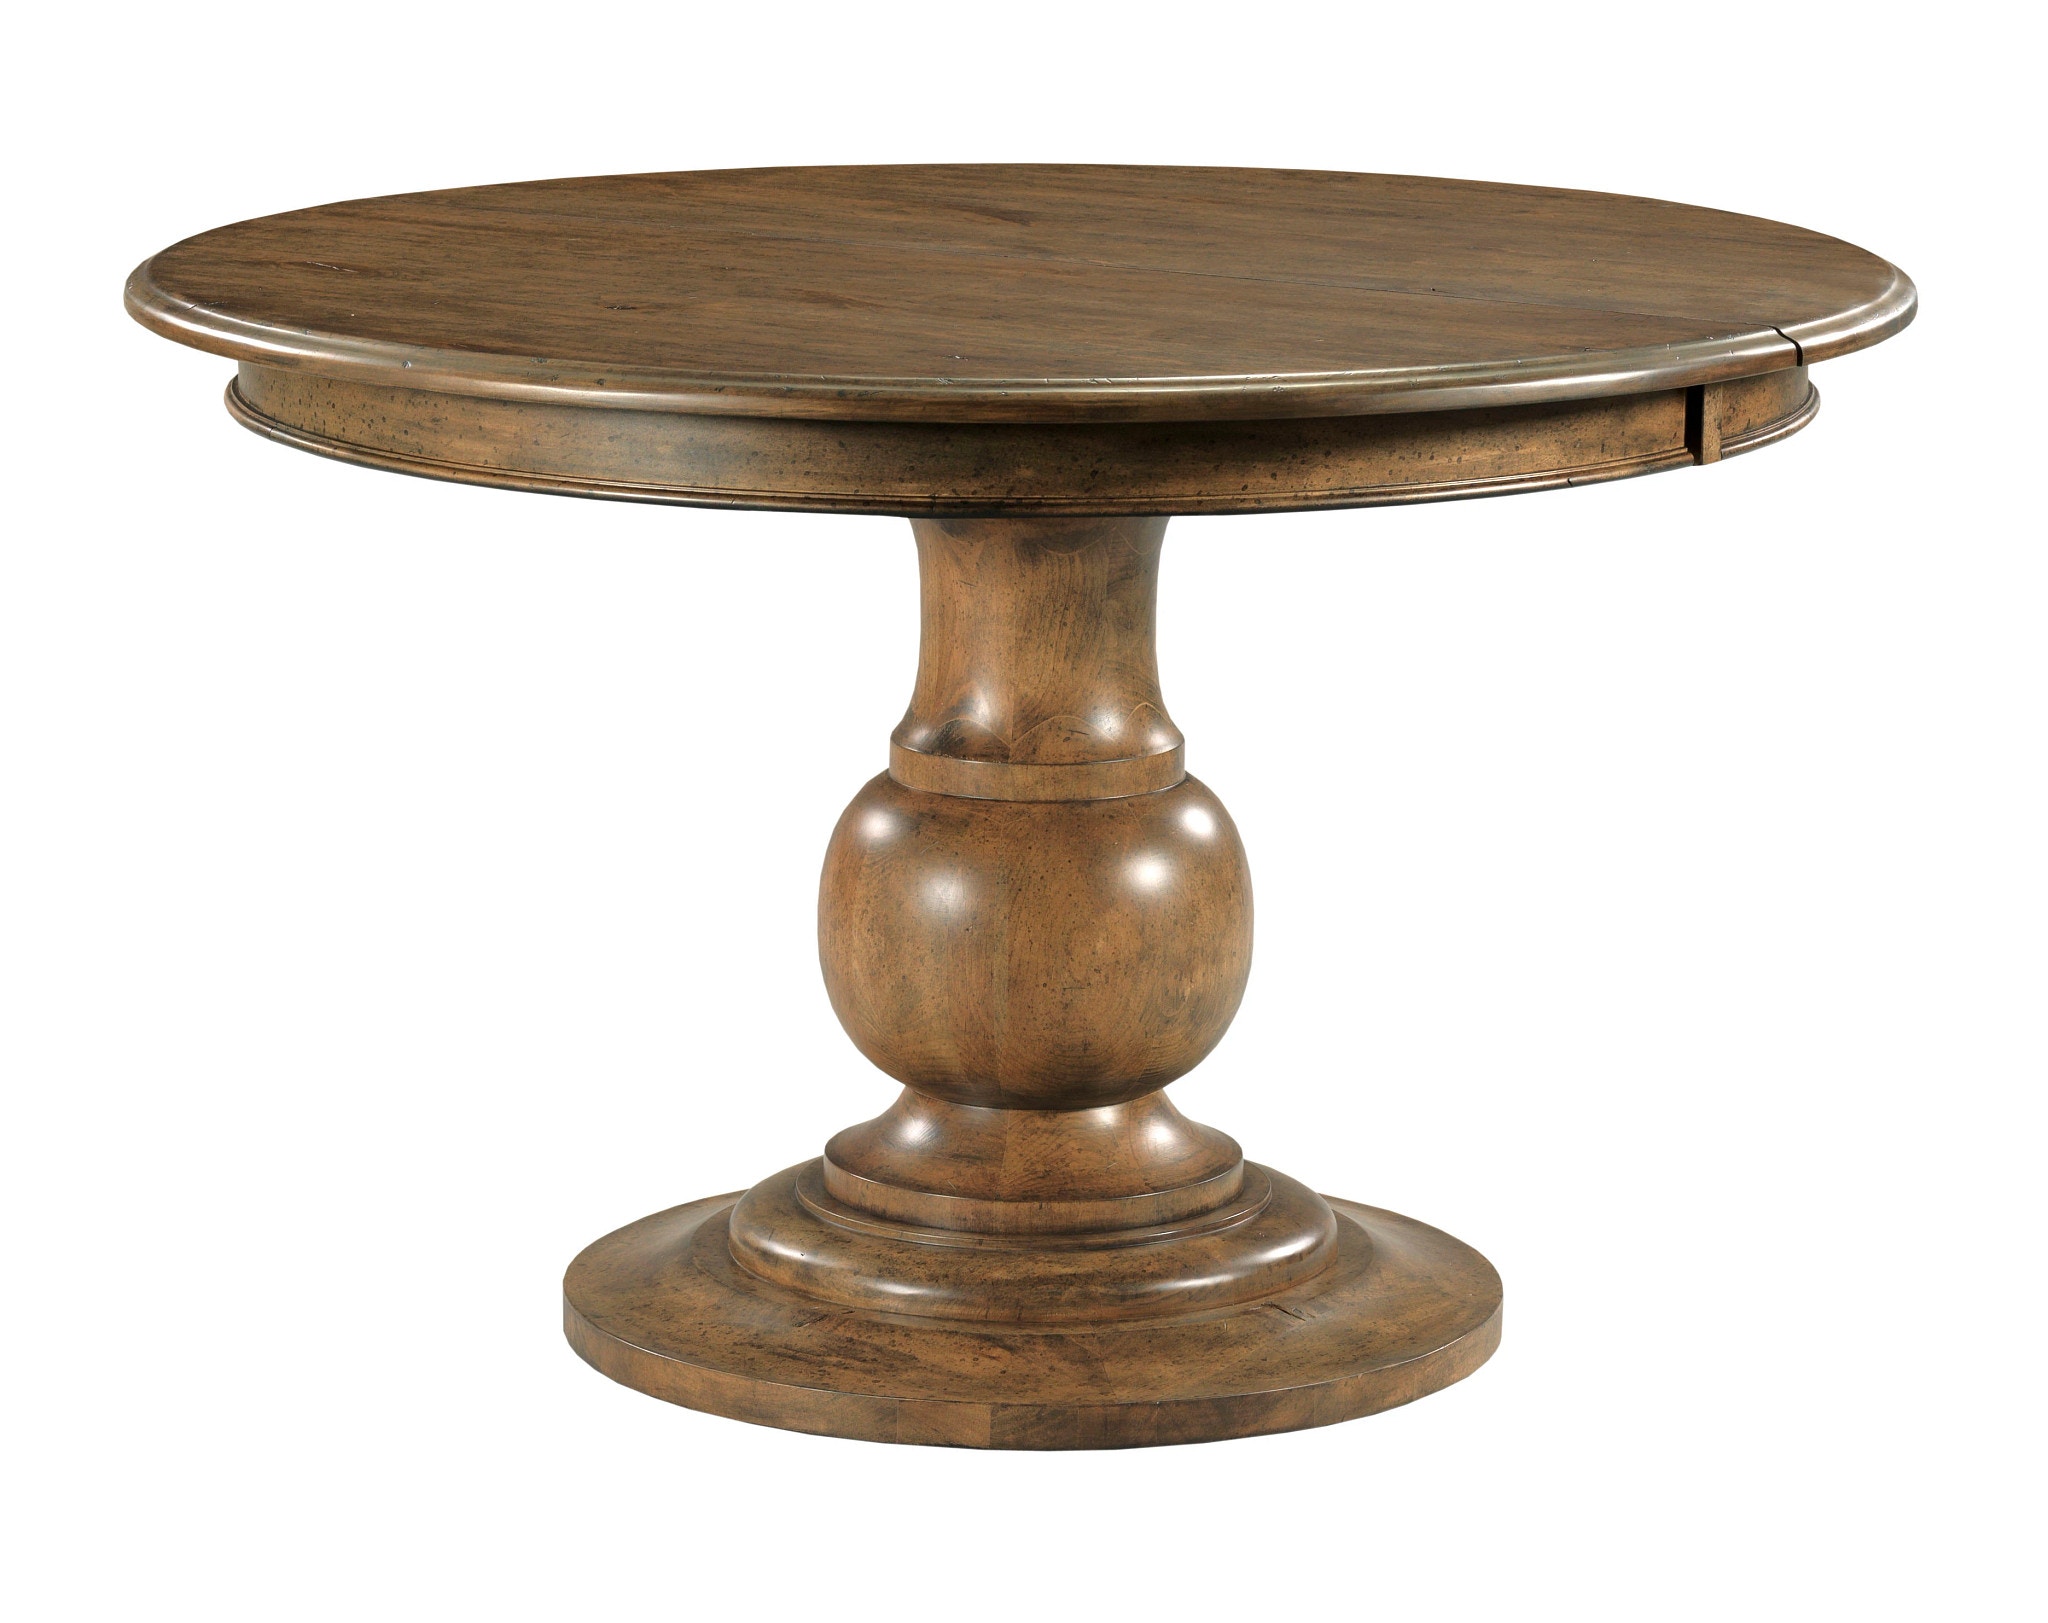 Whitson Round Pedestal Dining Table - Complete KI024701P